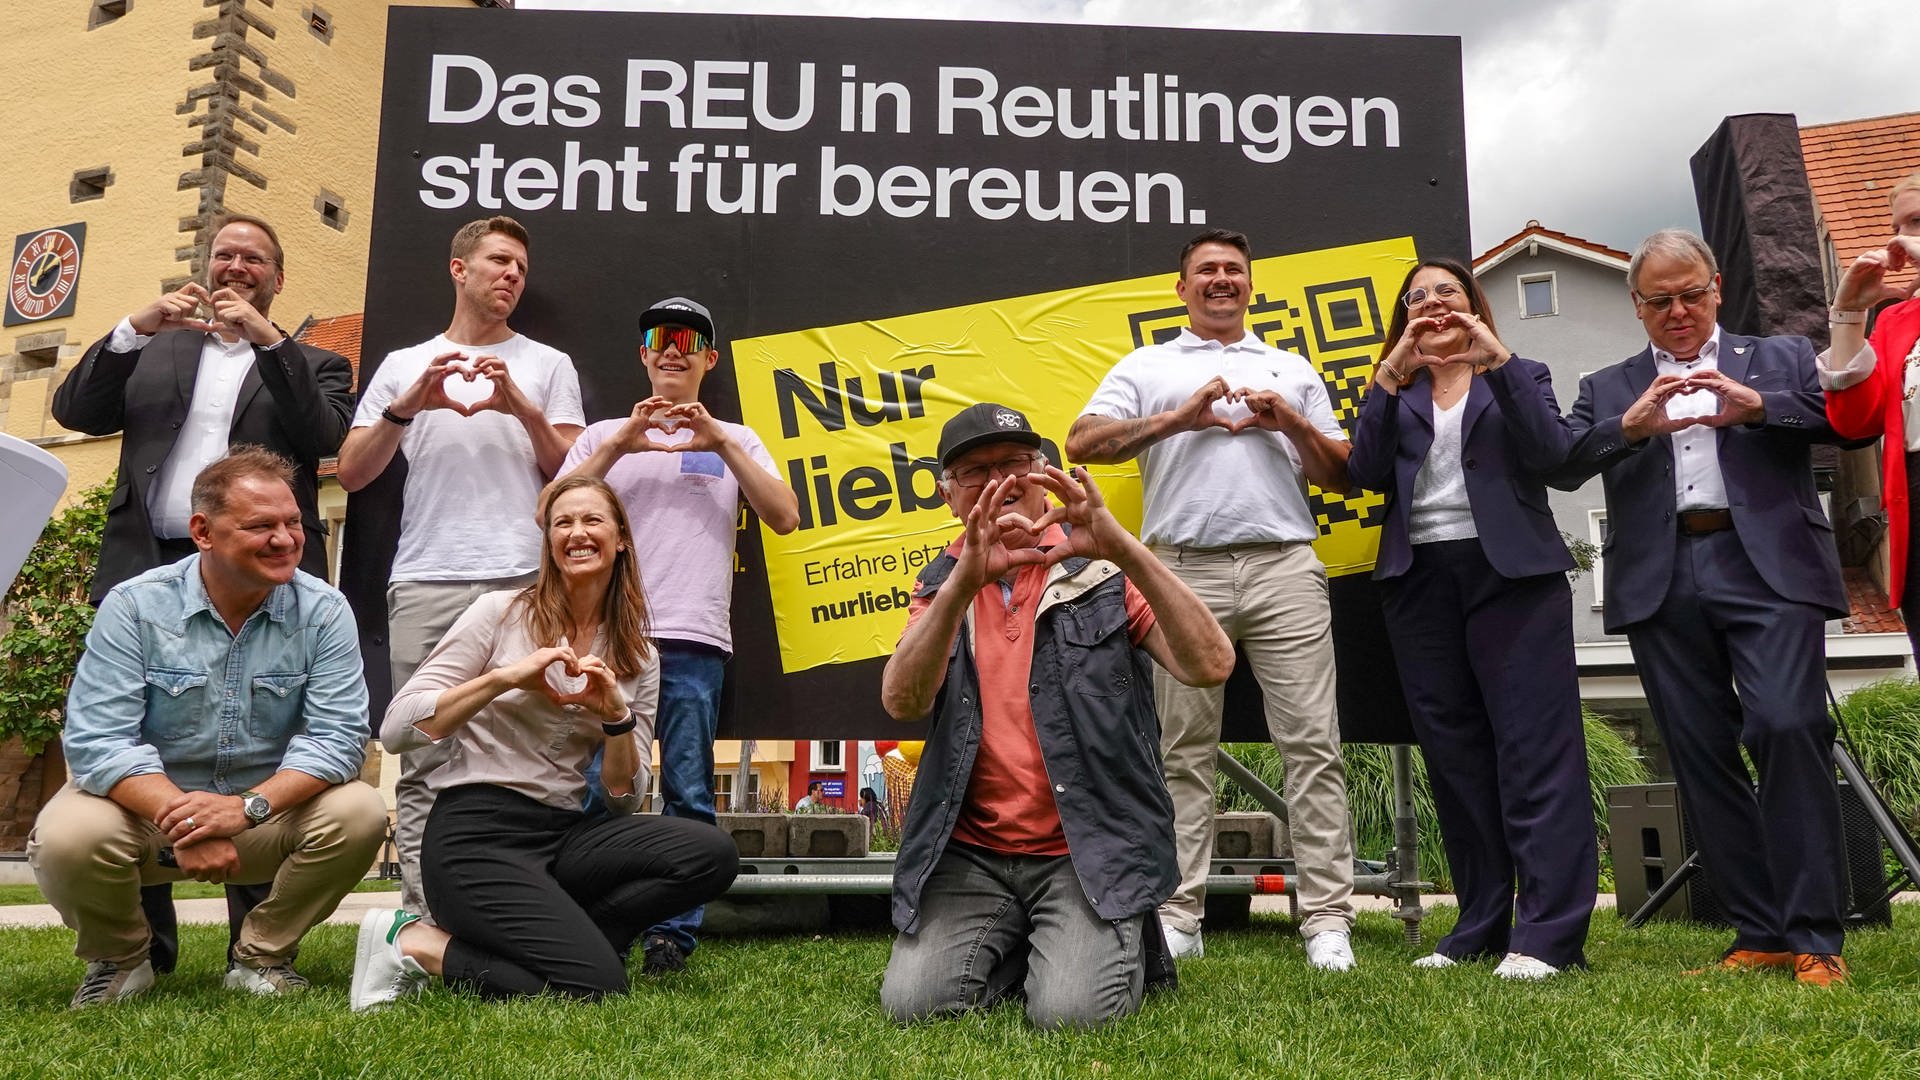 Plakate verspotten Reutlingen: Das steckt dahinter